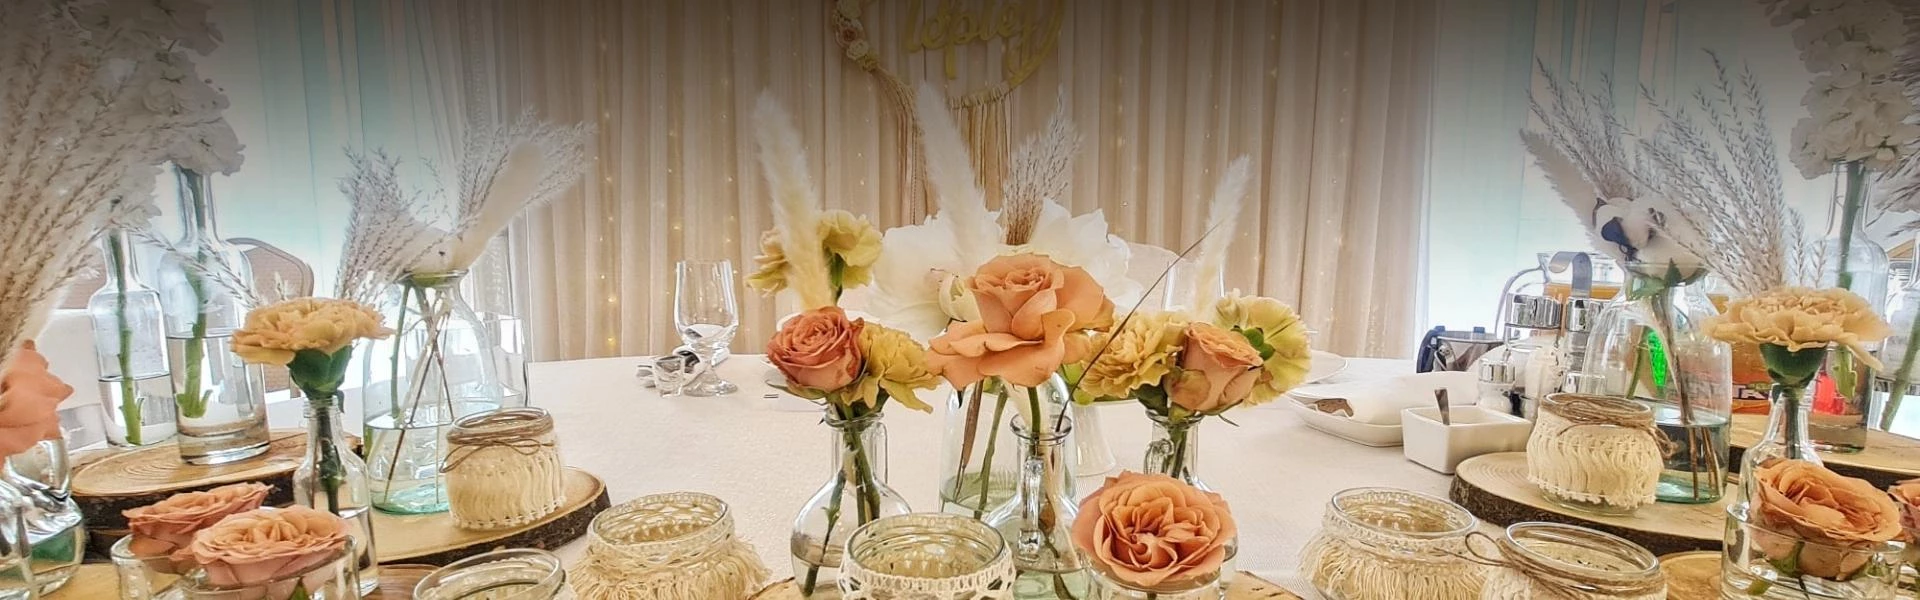 stół ozdobiony kwiatami